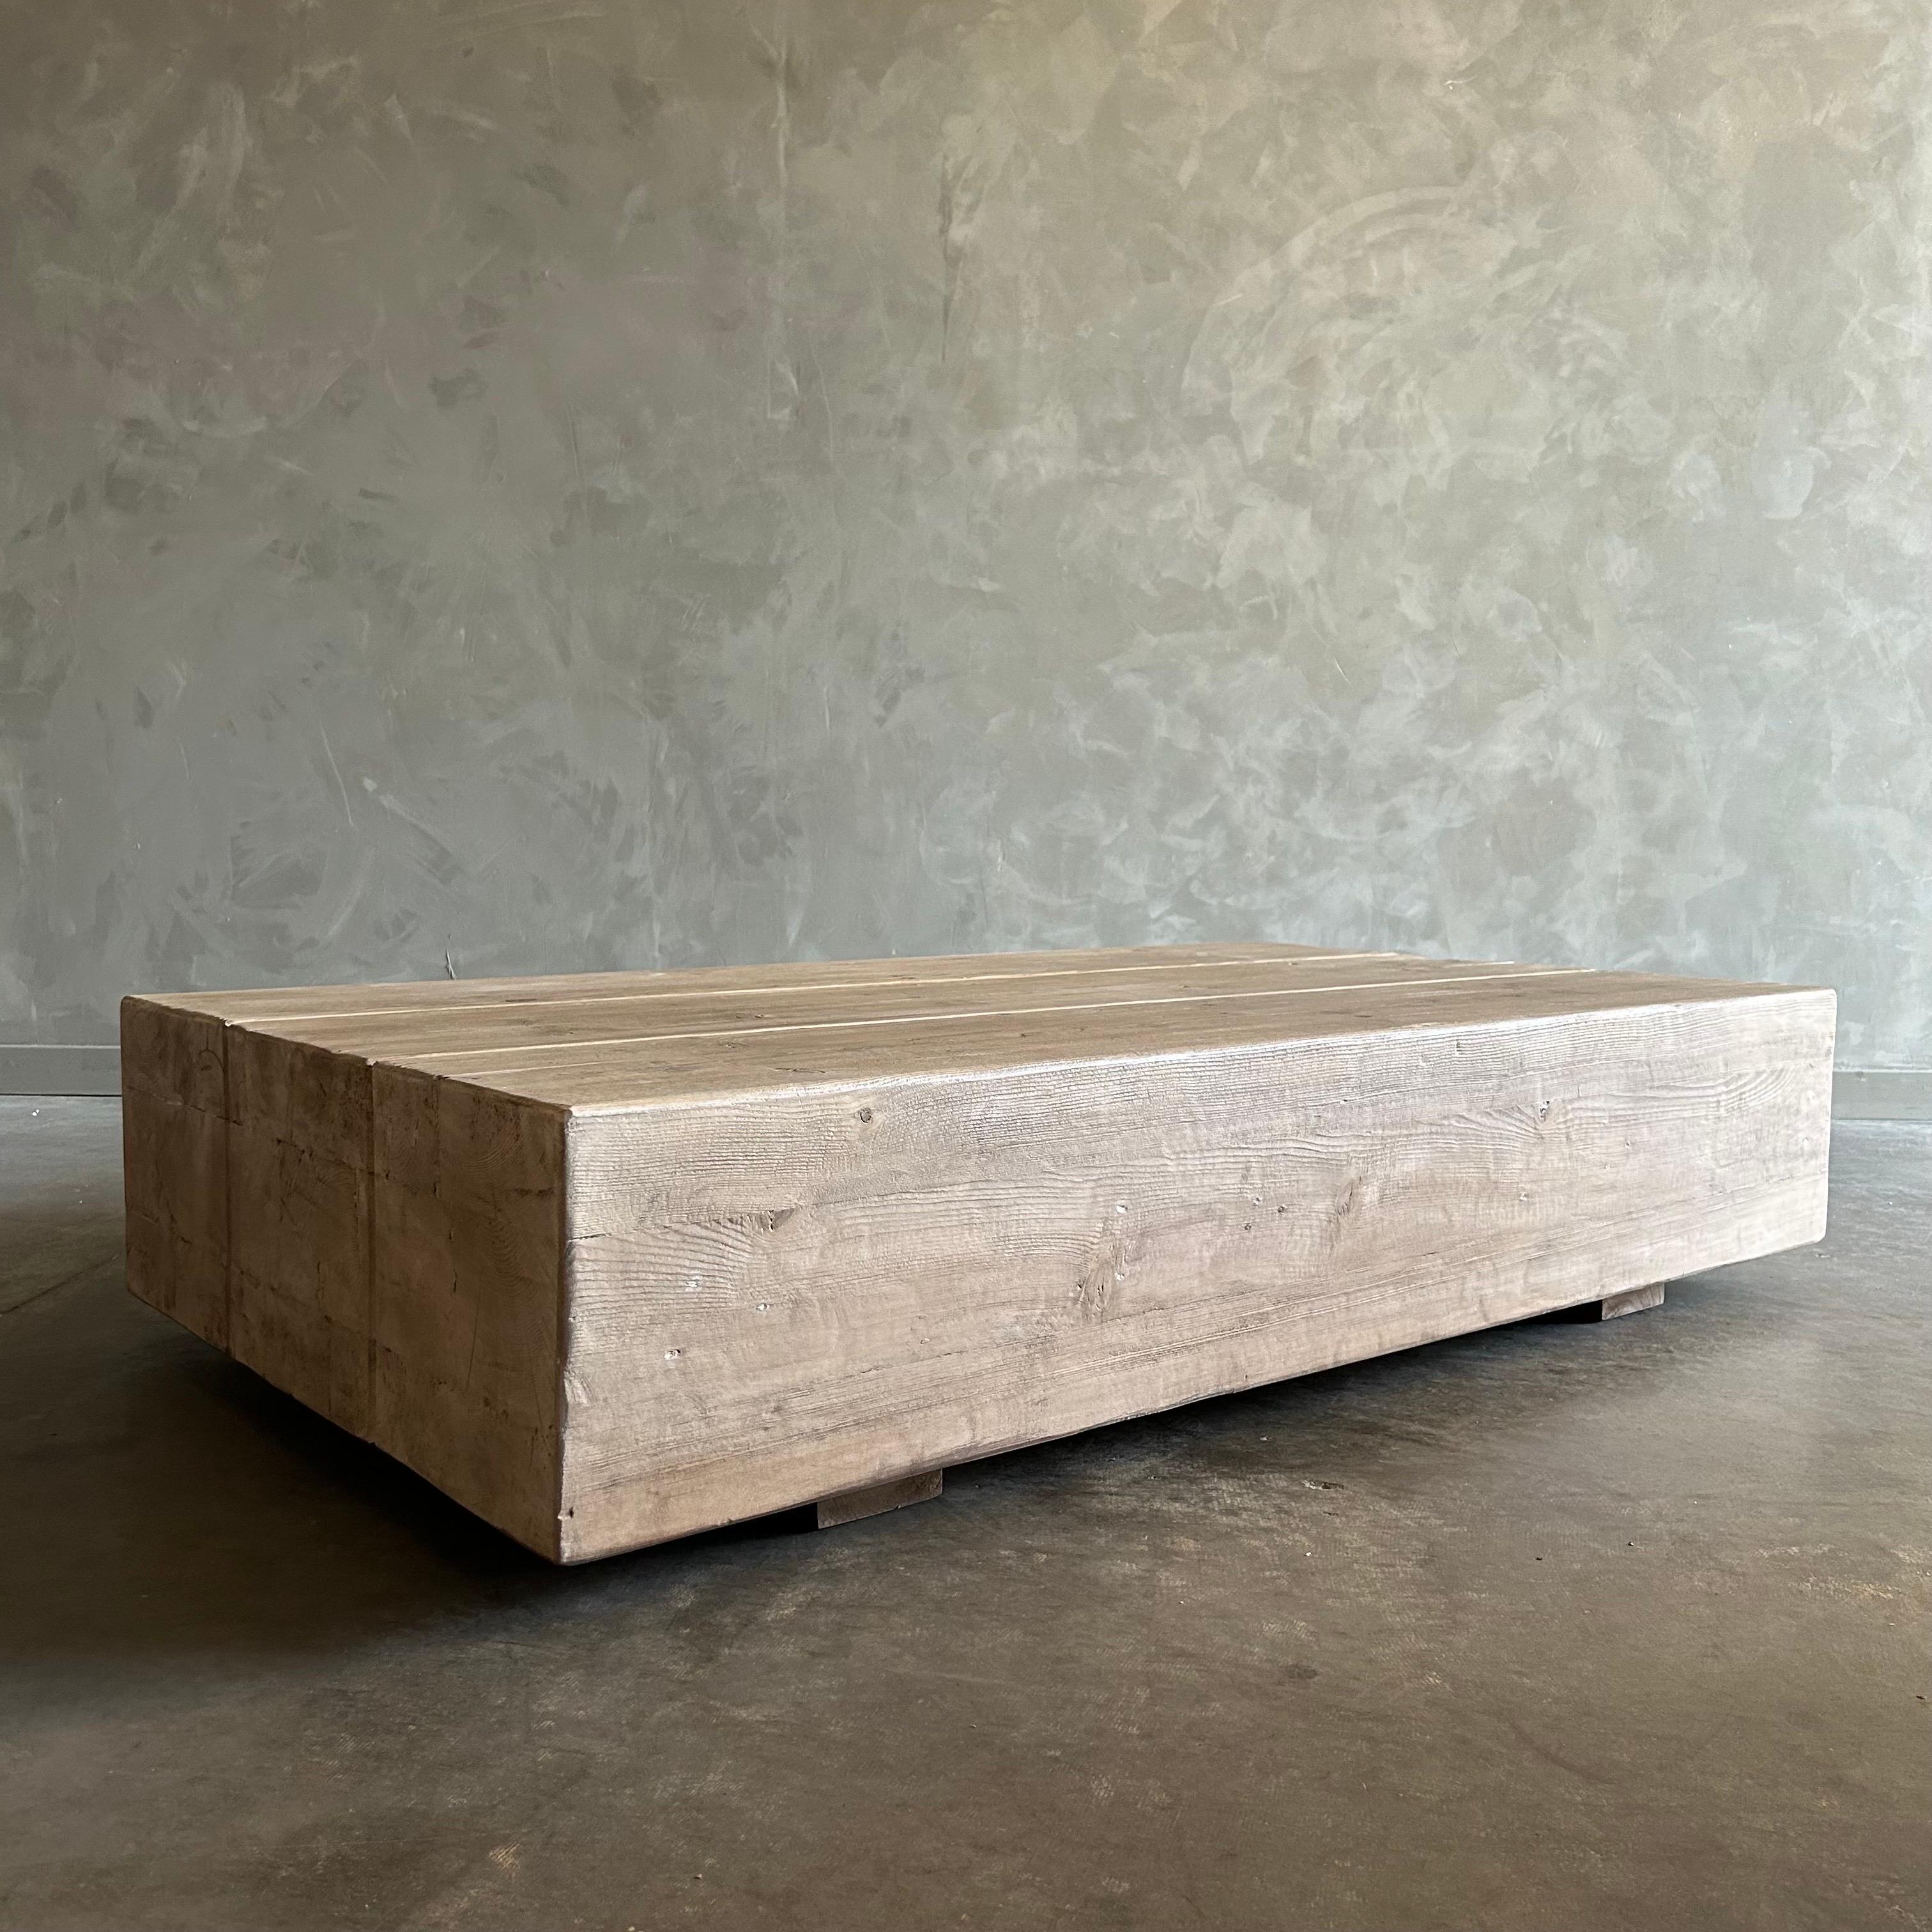 BH COLLECTION
Einzigartiger Ulmenholz-Couchtisch
Dieser Tisch ist der Traum eines modernen Minimalisten, ein elegantes Stück, das im Laufe der Zeit mit Ihnen wachsen wird. Der Tisch ist aus Ulmenholzbrettern gefertigt, deren Oberfläche die